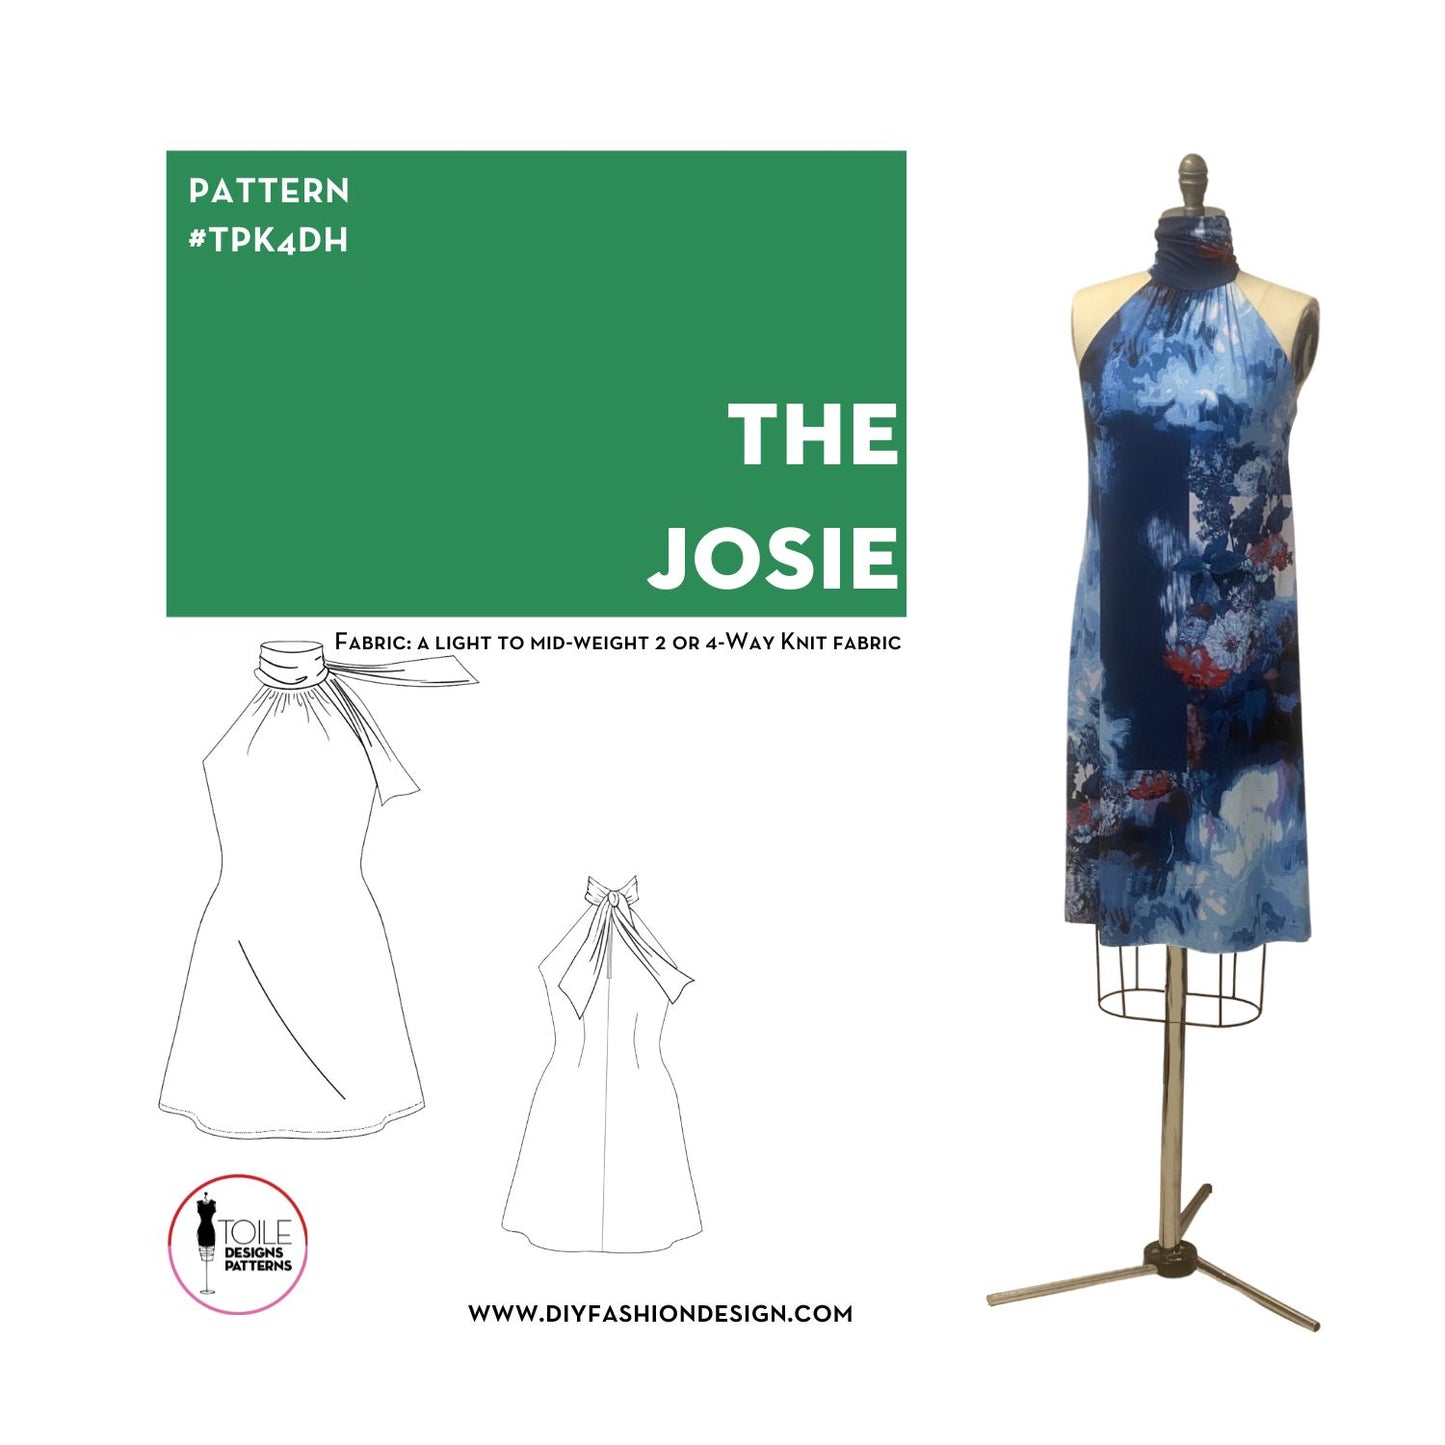 The Josie – DIY FASHION DESIGN